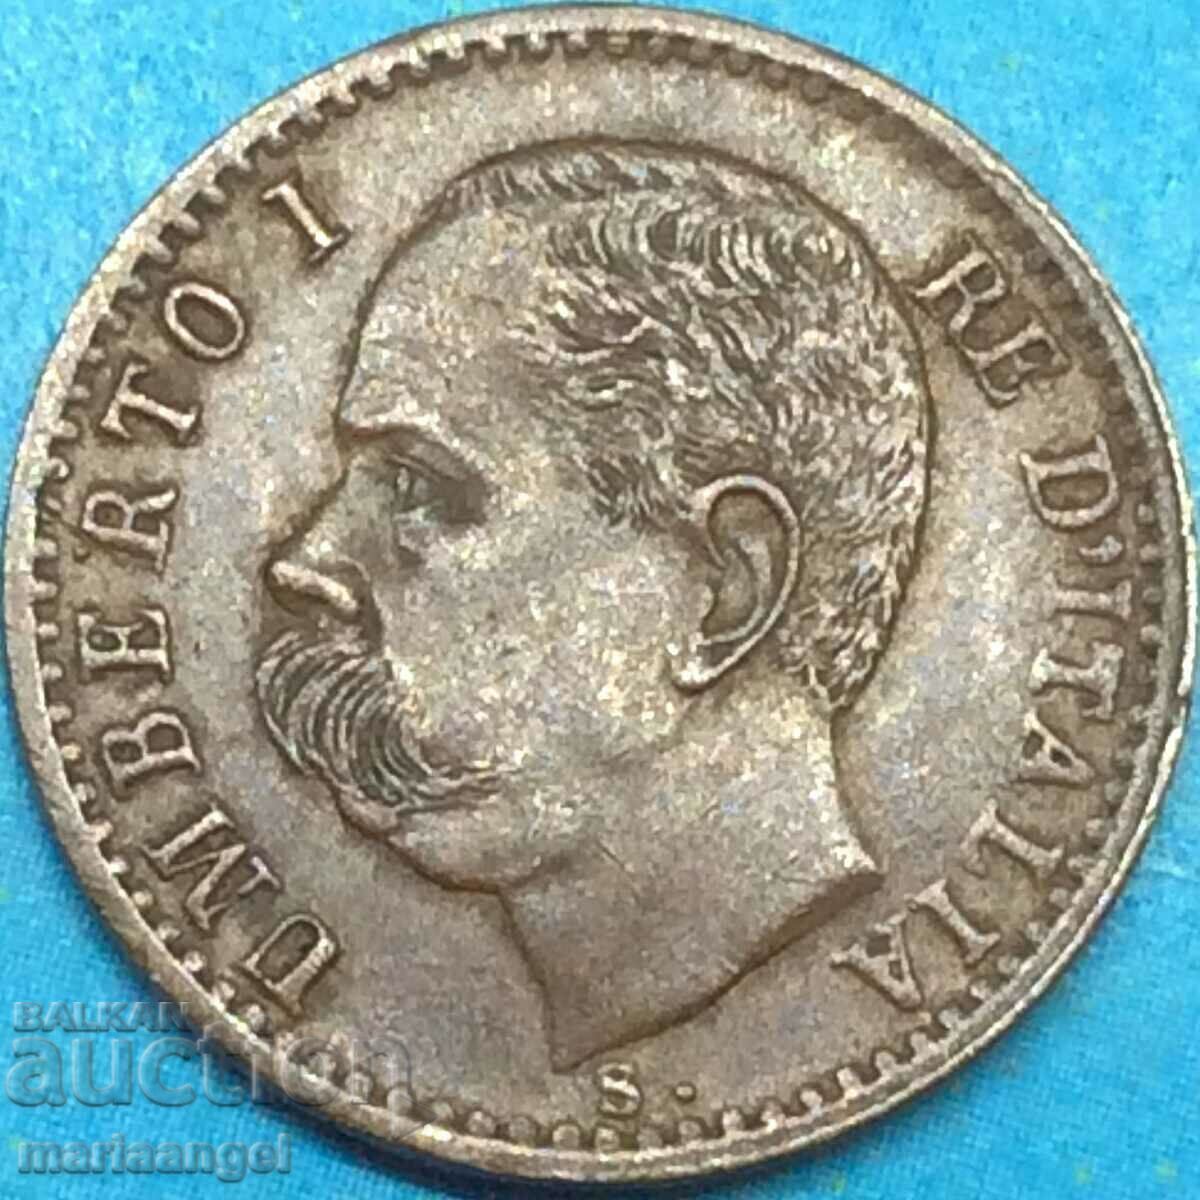 1 centesimo 1900 Italy R - Rome King Umberto I H1